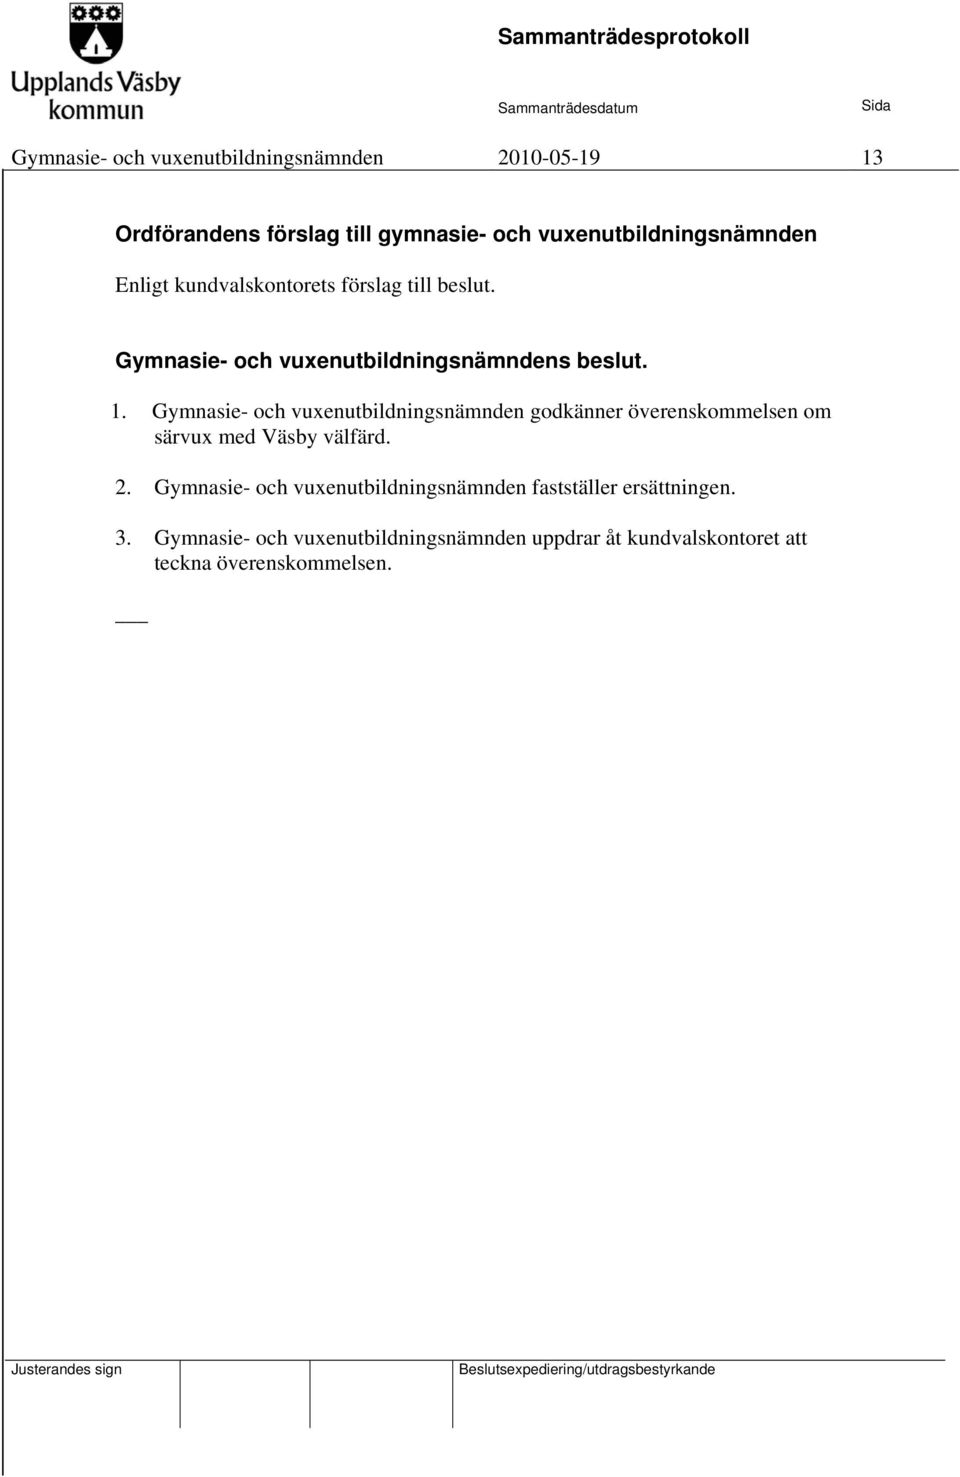 Gymnasie- och vuxenutbildningsnämnden godkänner överenskommelsen om särvux med Väsby välfärd. 2.